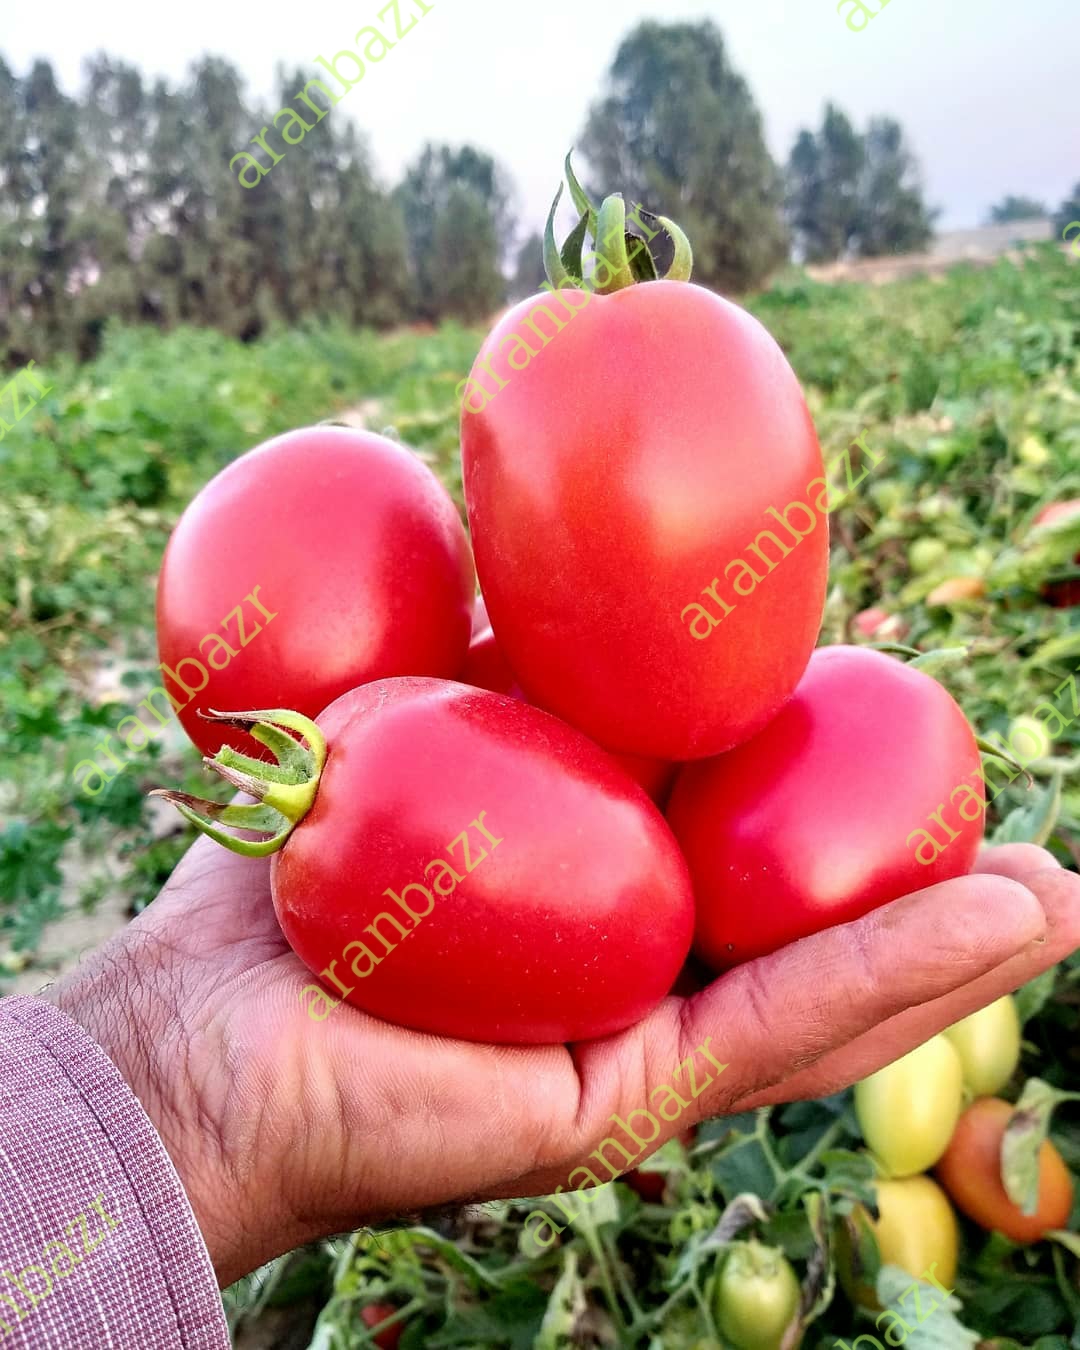 بذر گوجه فرنگی ۰۴۰۶